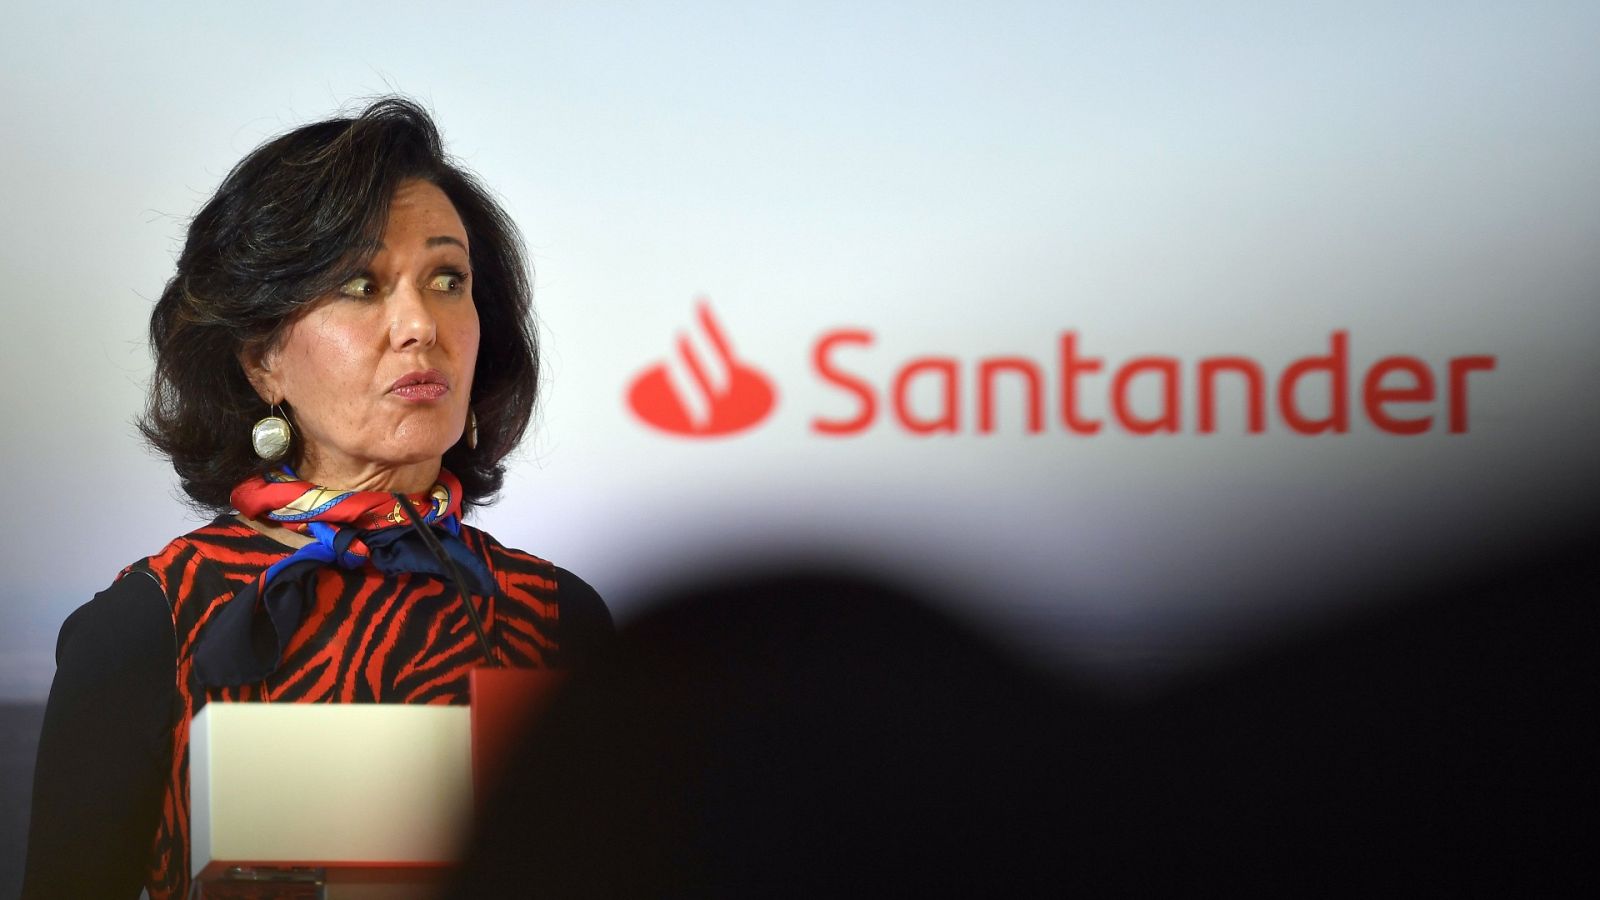 La presidenta del Santander, Ana Botín, presenta las primeras pérdidas anuales del banco